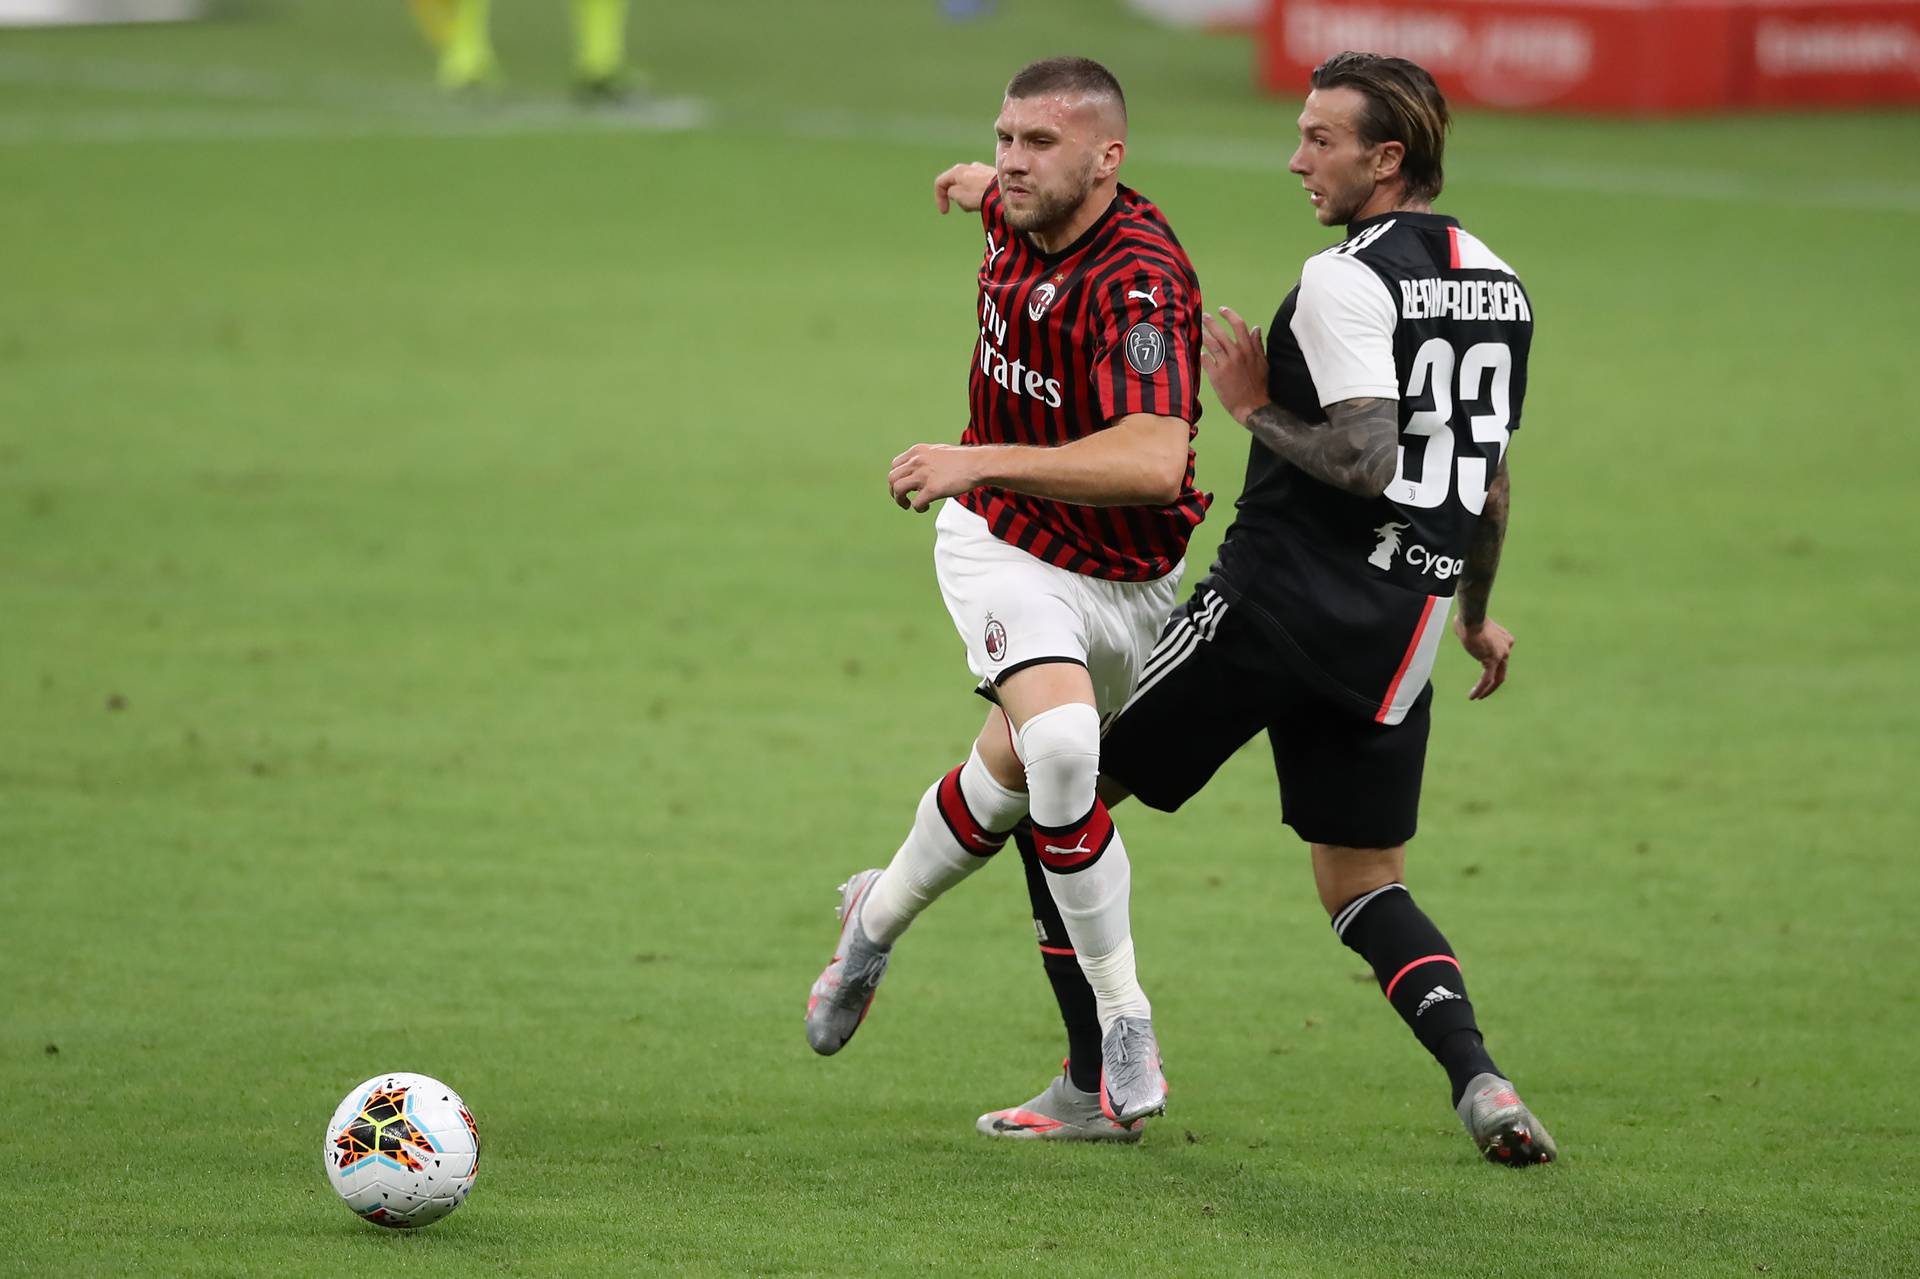 AC Milan v Juventus - Serie A - Giuseppe Meazza